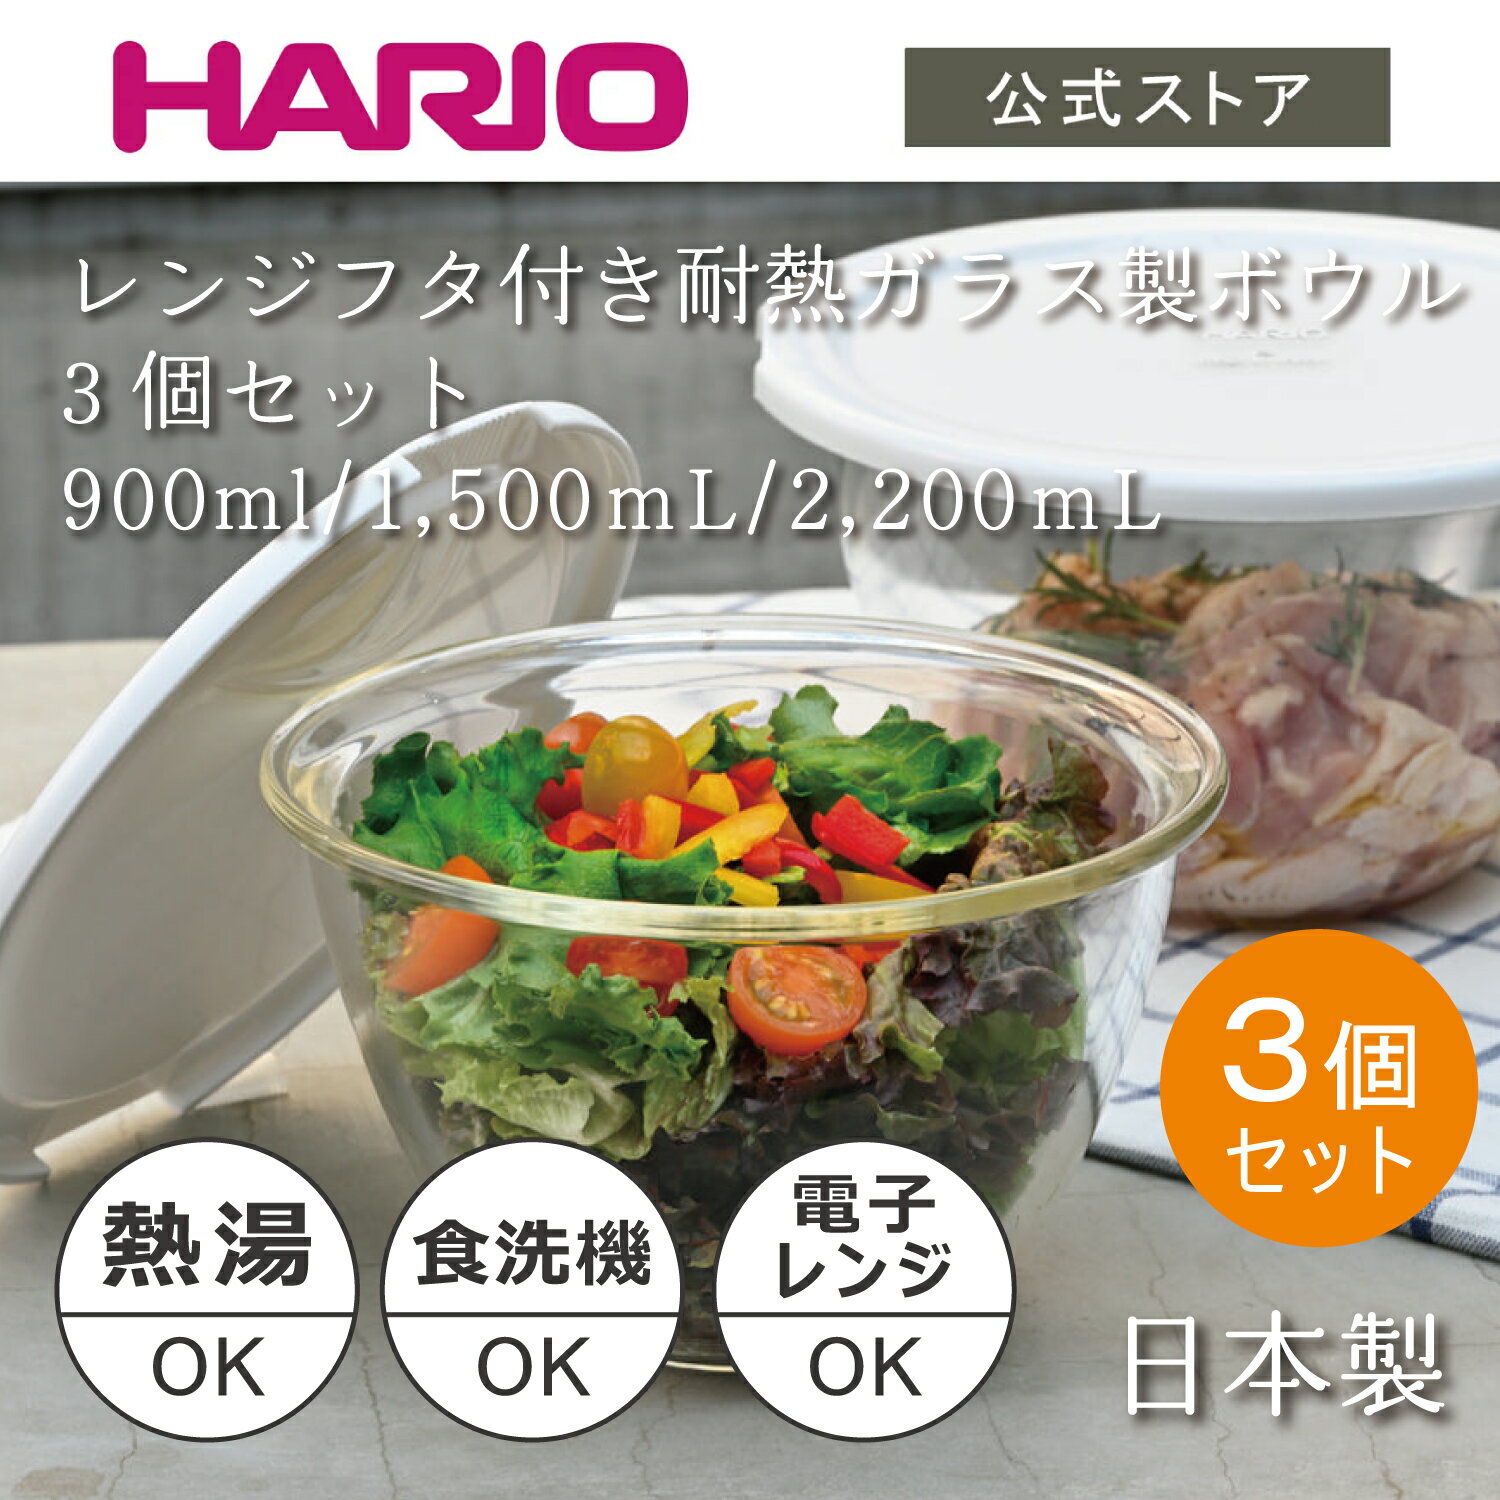 【公式ショップ】HARIO レンジフタ付き耐熱ガラス製ボウル3個セット HARIO ハリオ 食洗機対応 耐熱ガラス ボウル パーツ 調理 製菓 フタ 水切り